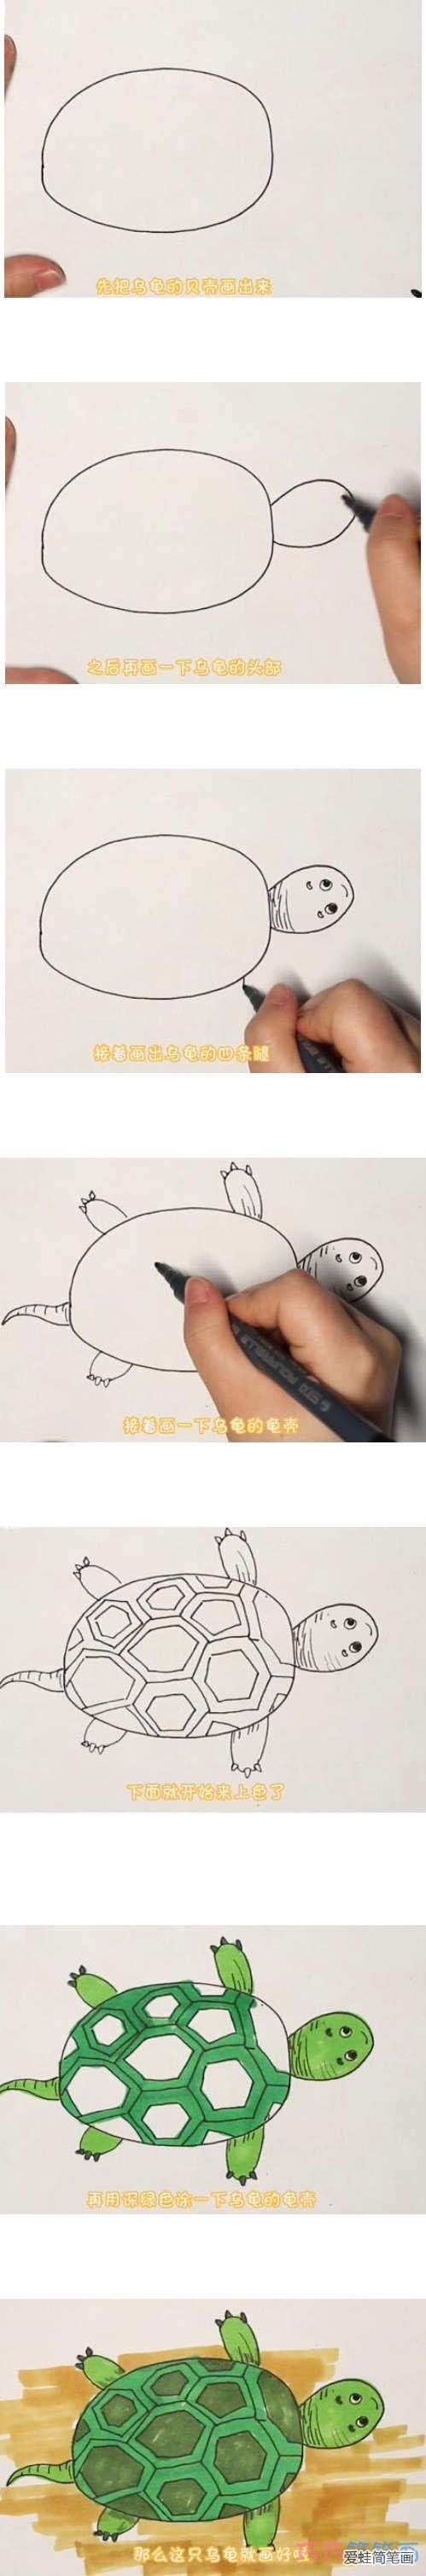 教你一步一步绘画小乌龟简笔画